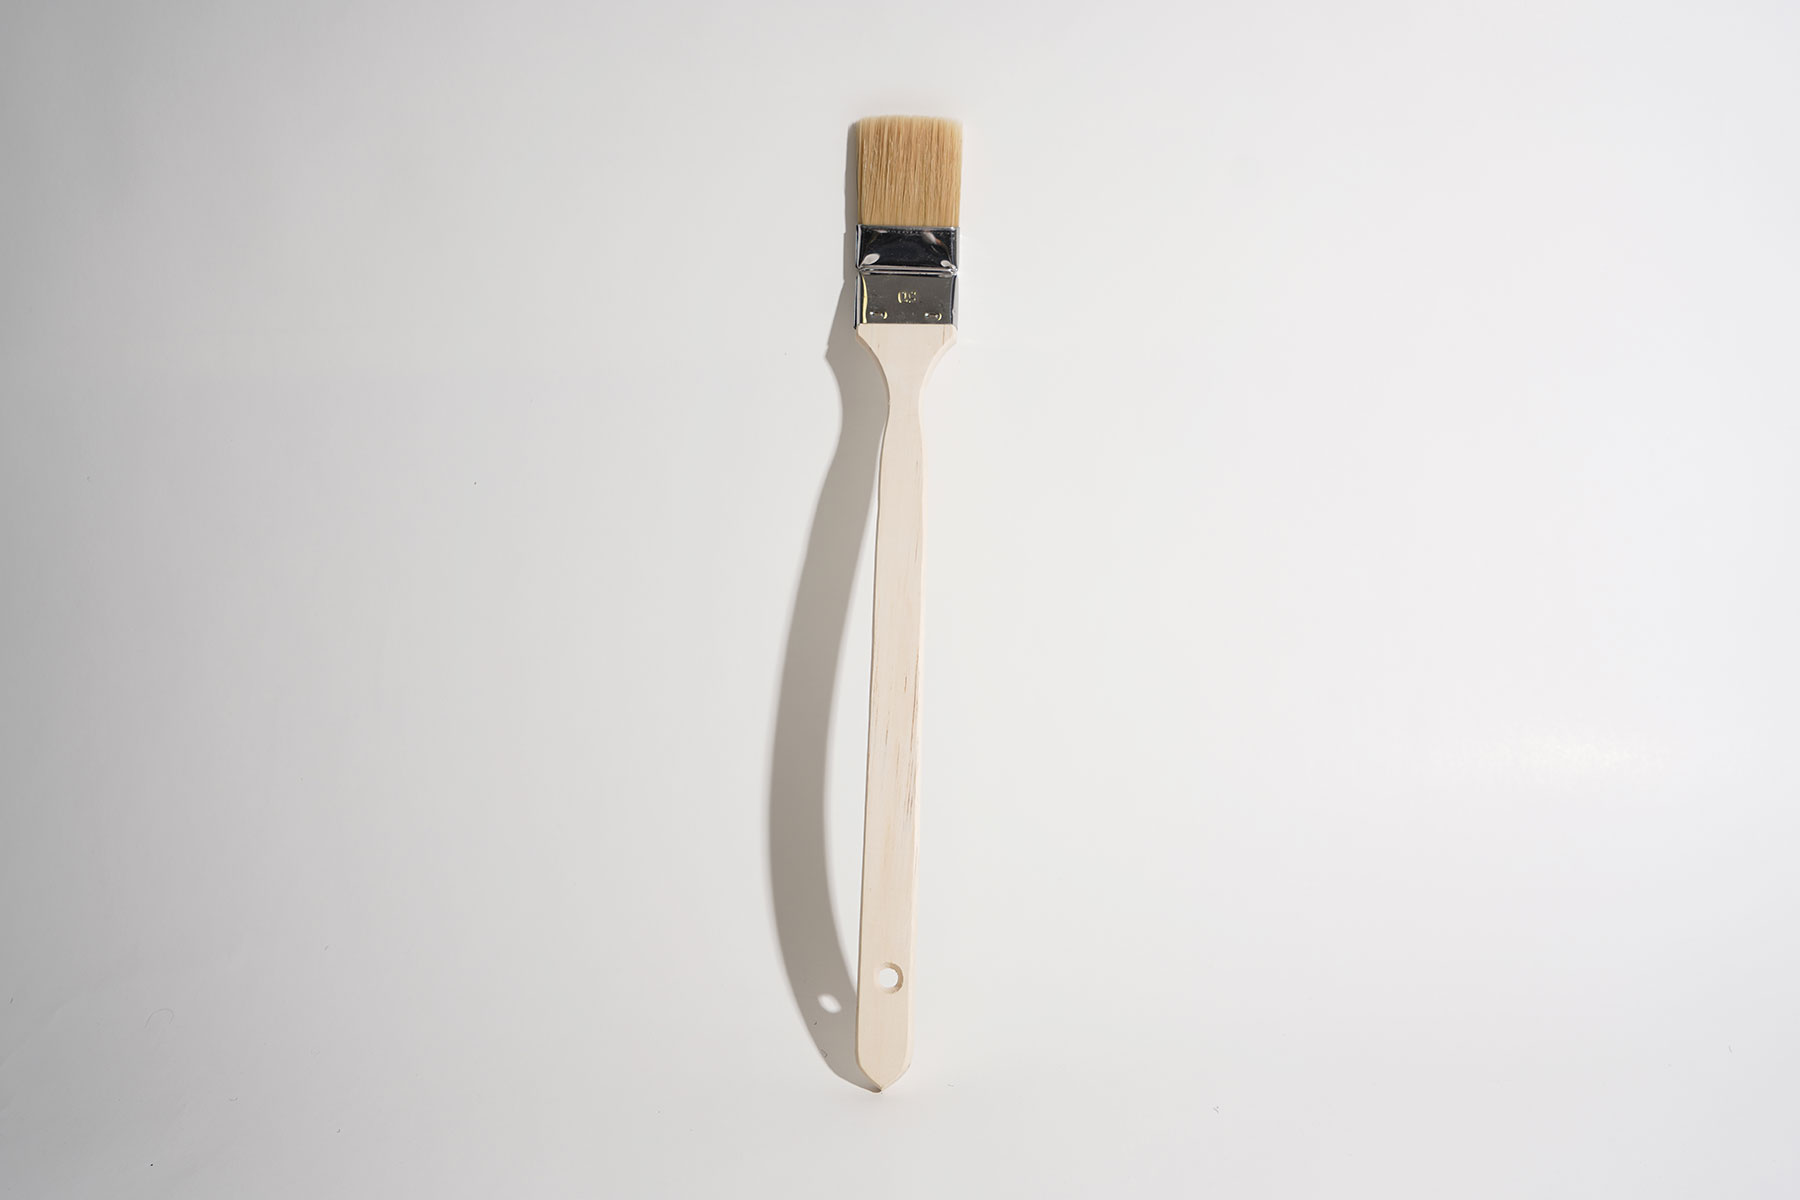             Eckenpinsel 5cm, langer Holzgriff für Malerarbeiten
        